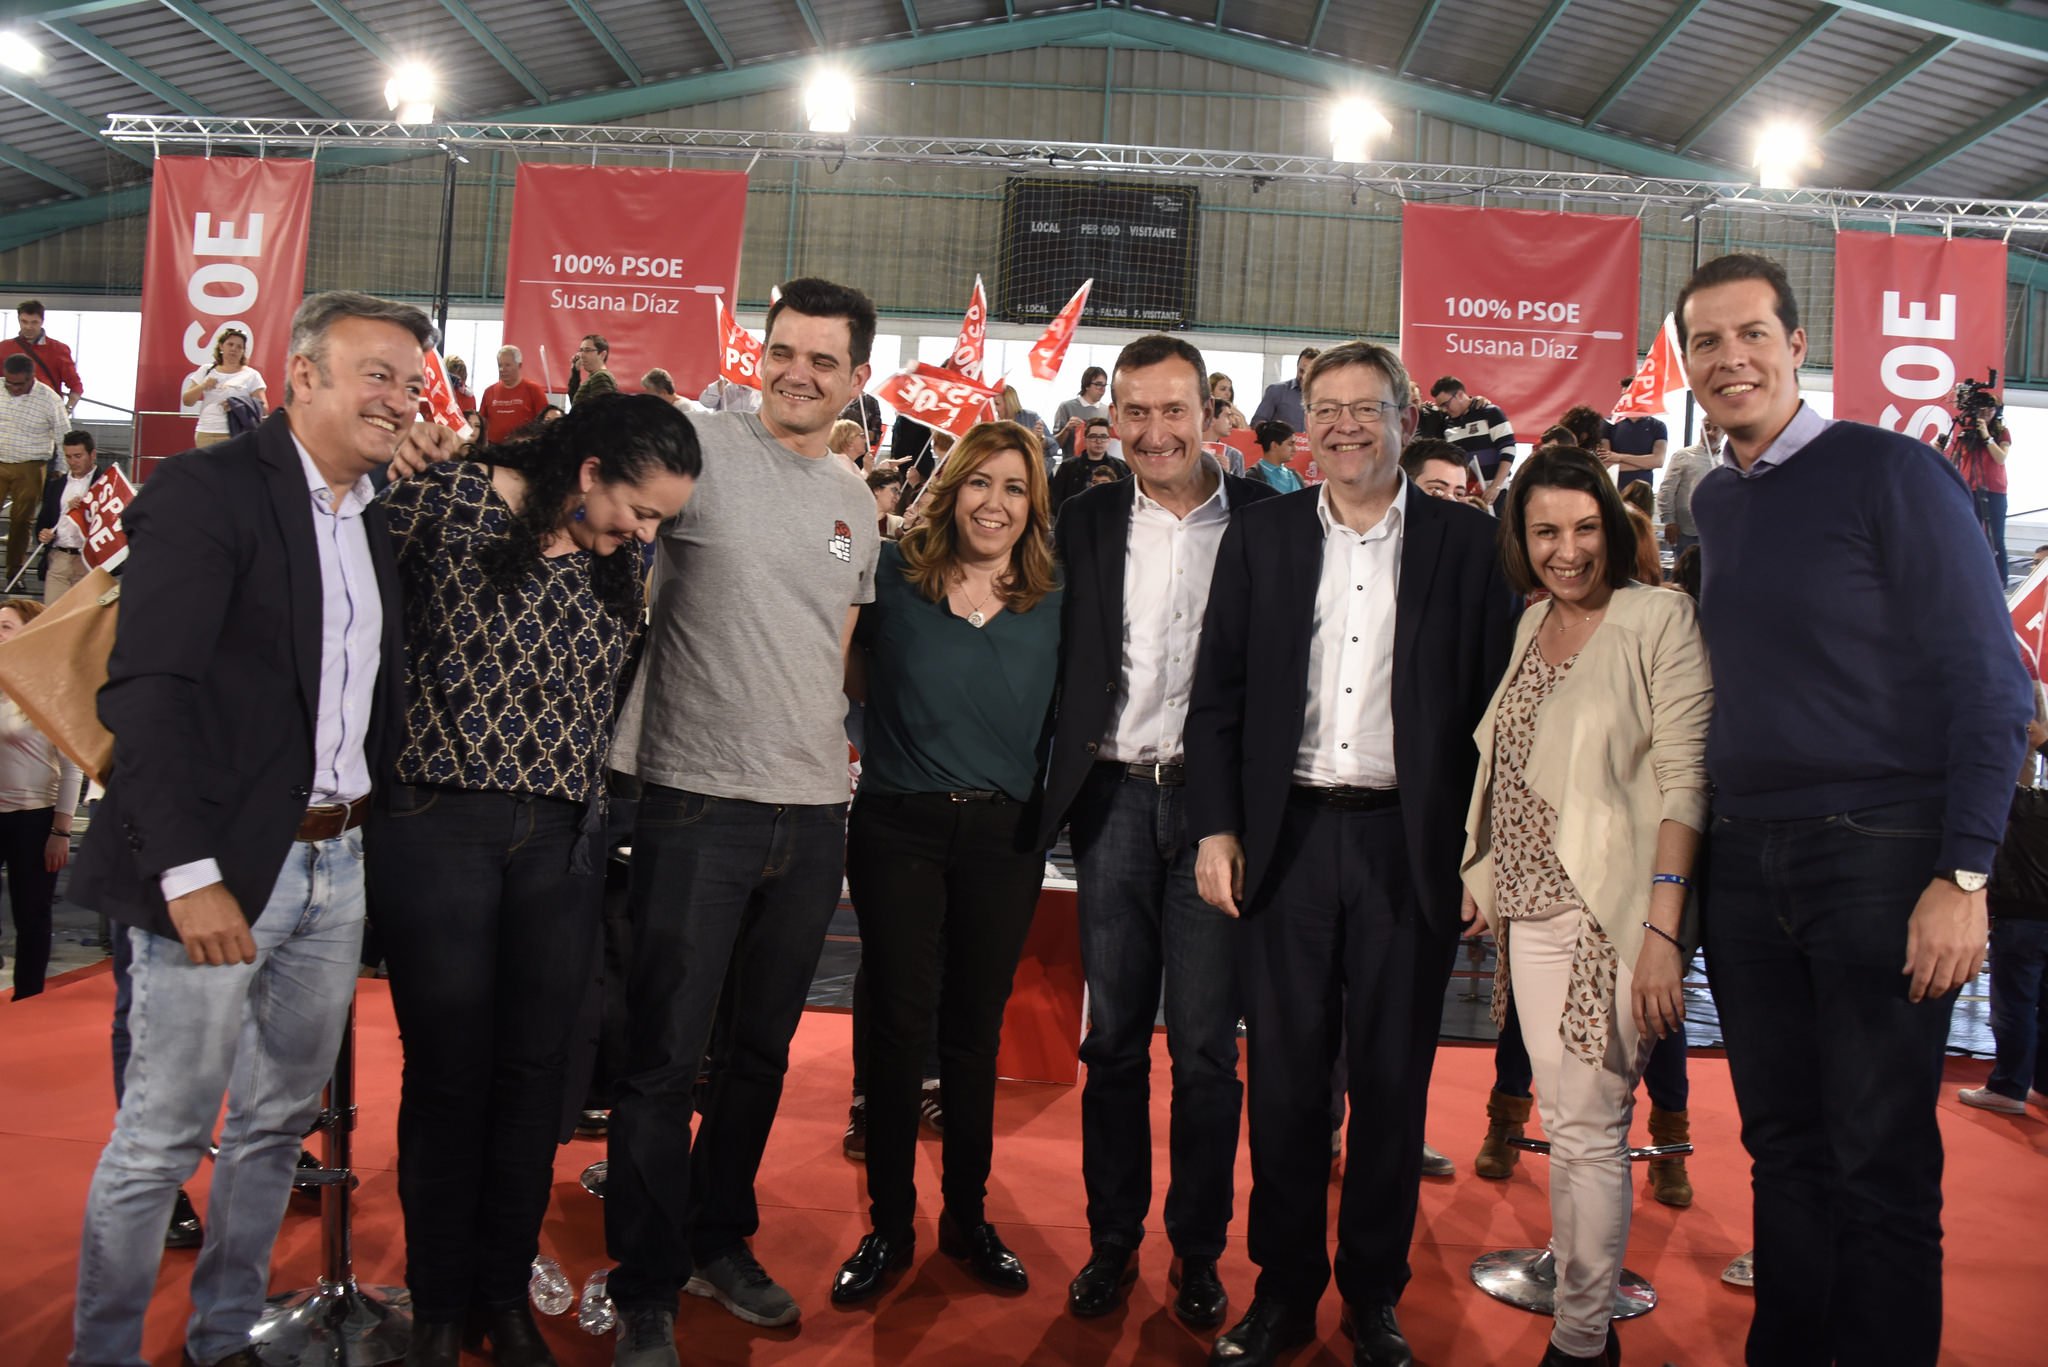 Chuvi y Susana Díaz en un acto del PSOE